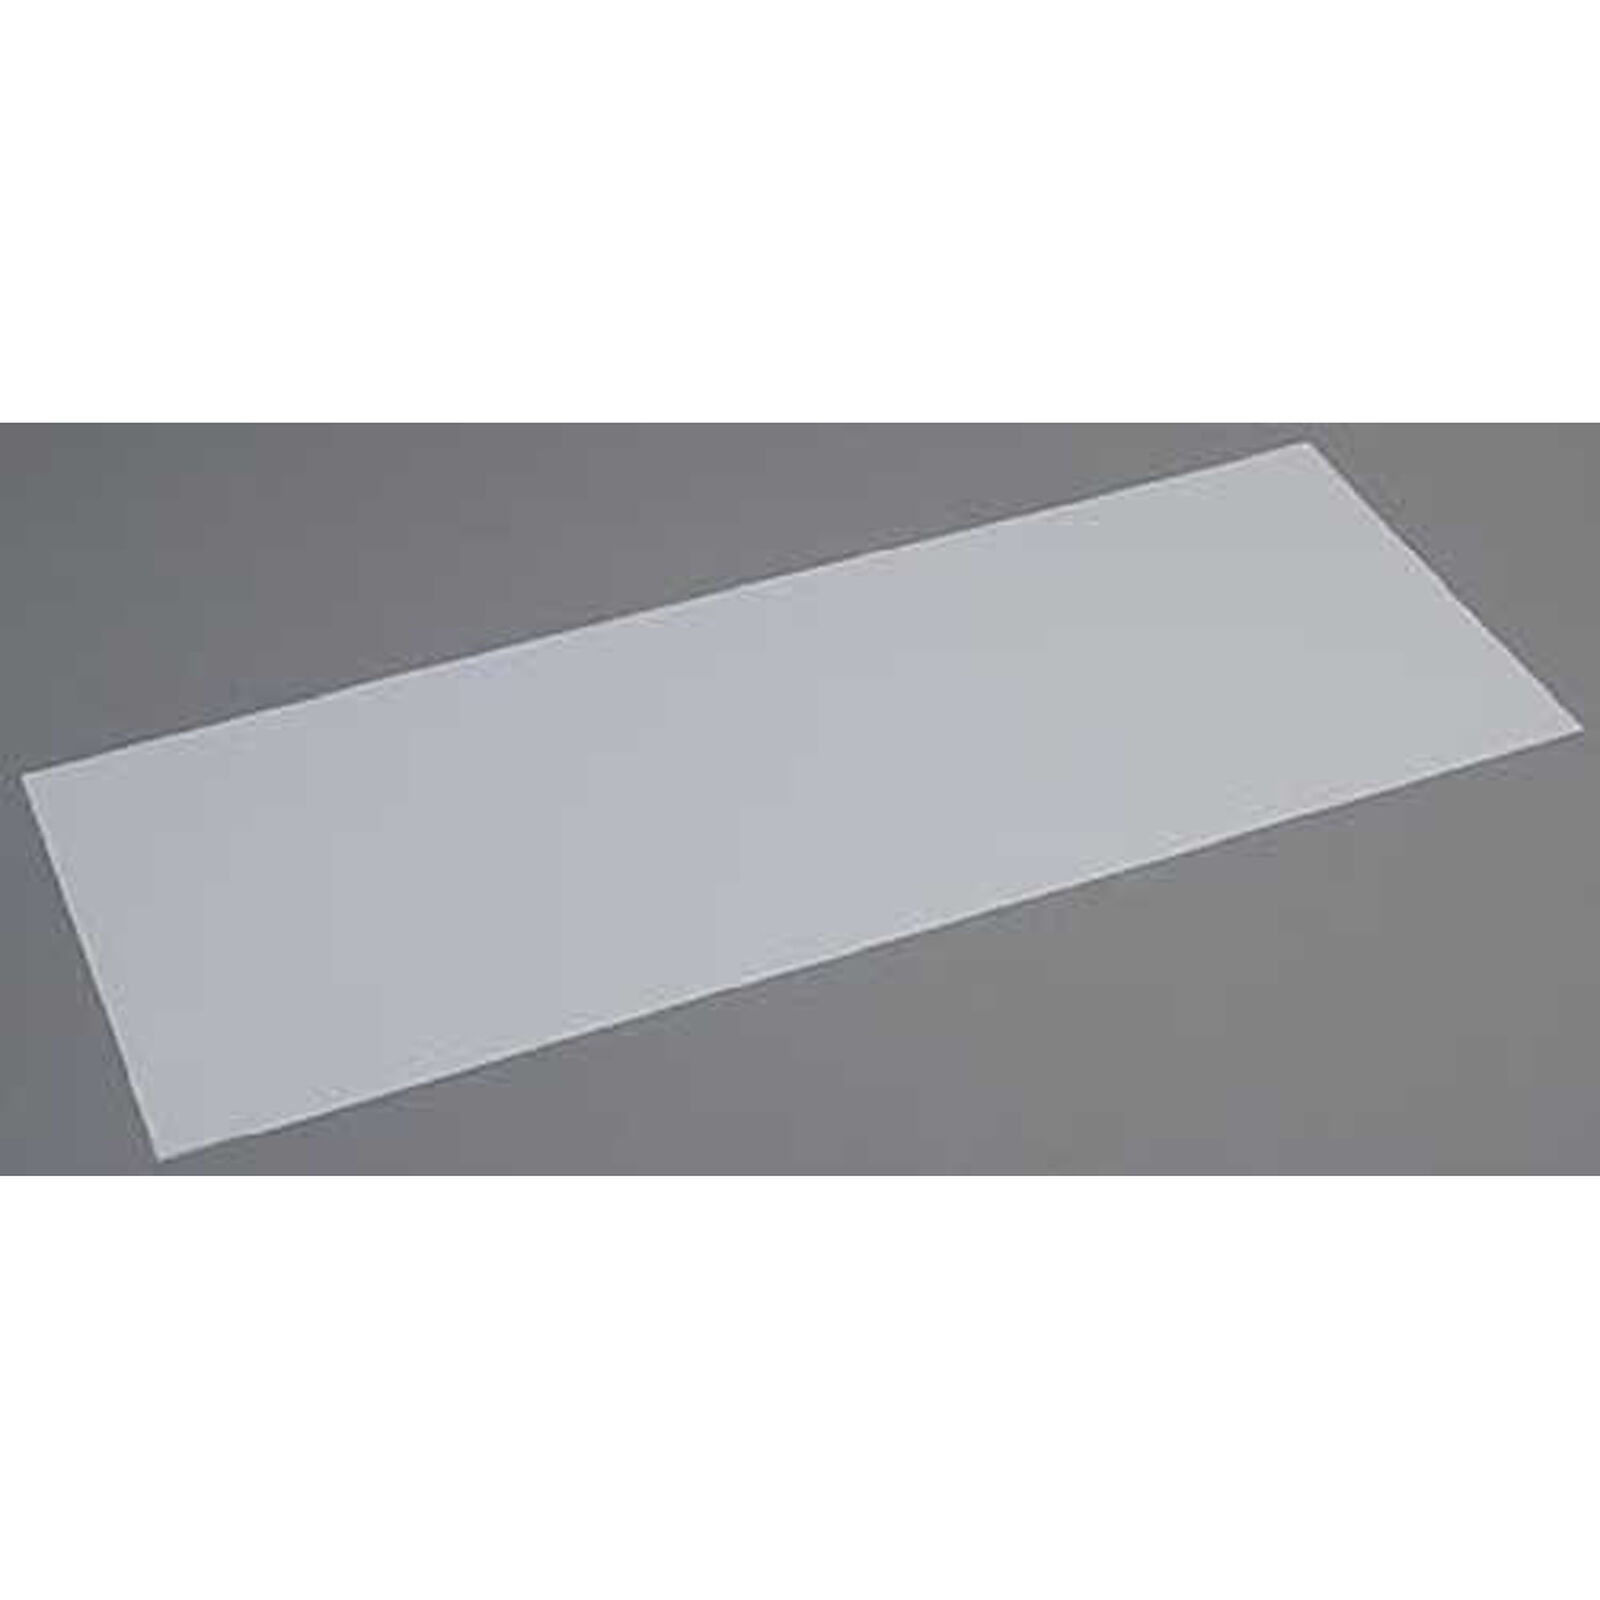 White Sheet .125 x 8 x 21